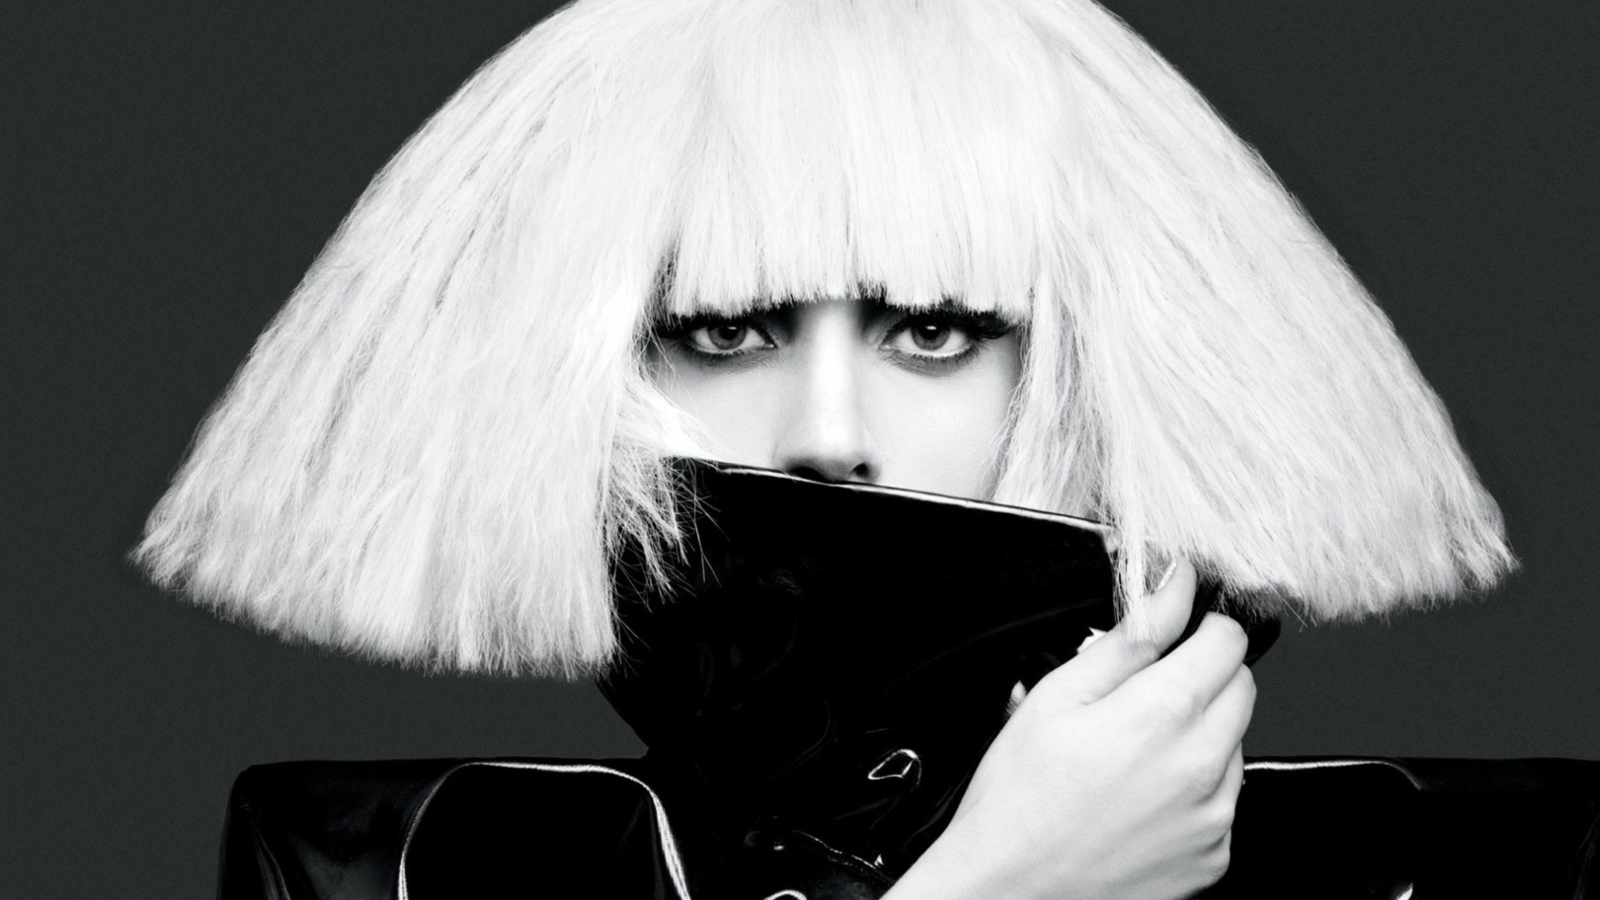 Обои Lady Gaga Black And White 1600x900